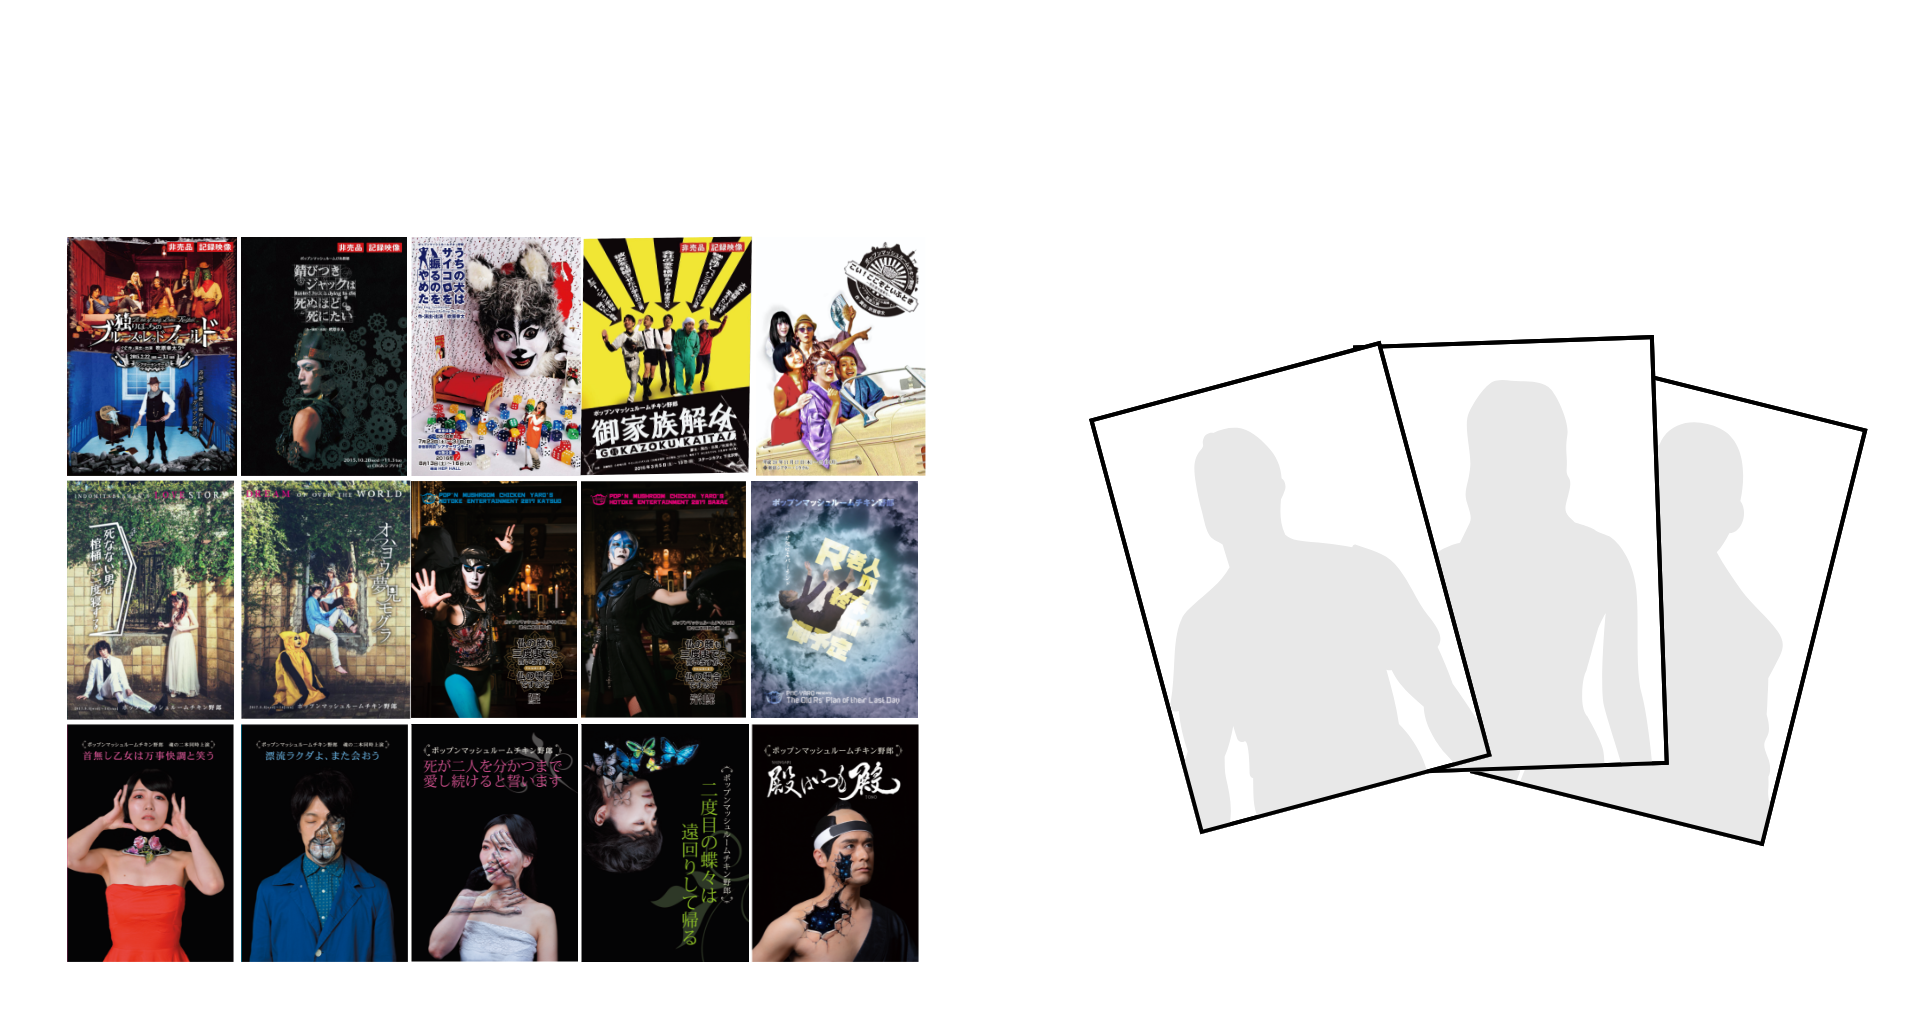 3.「お好きな過去公演DVD」付き ウハウハブロマイド3枚